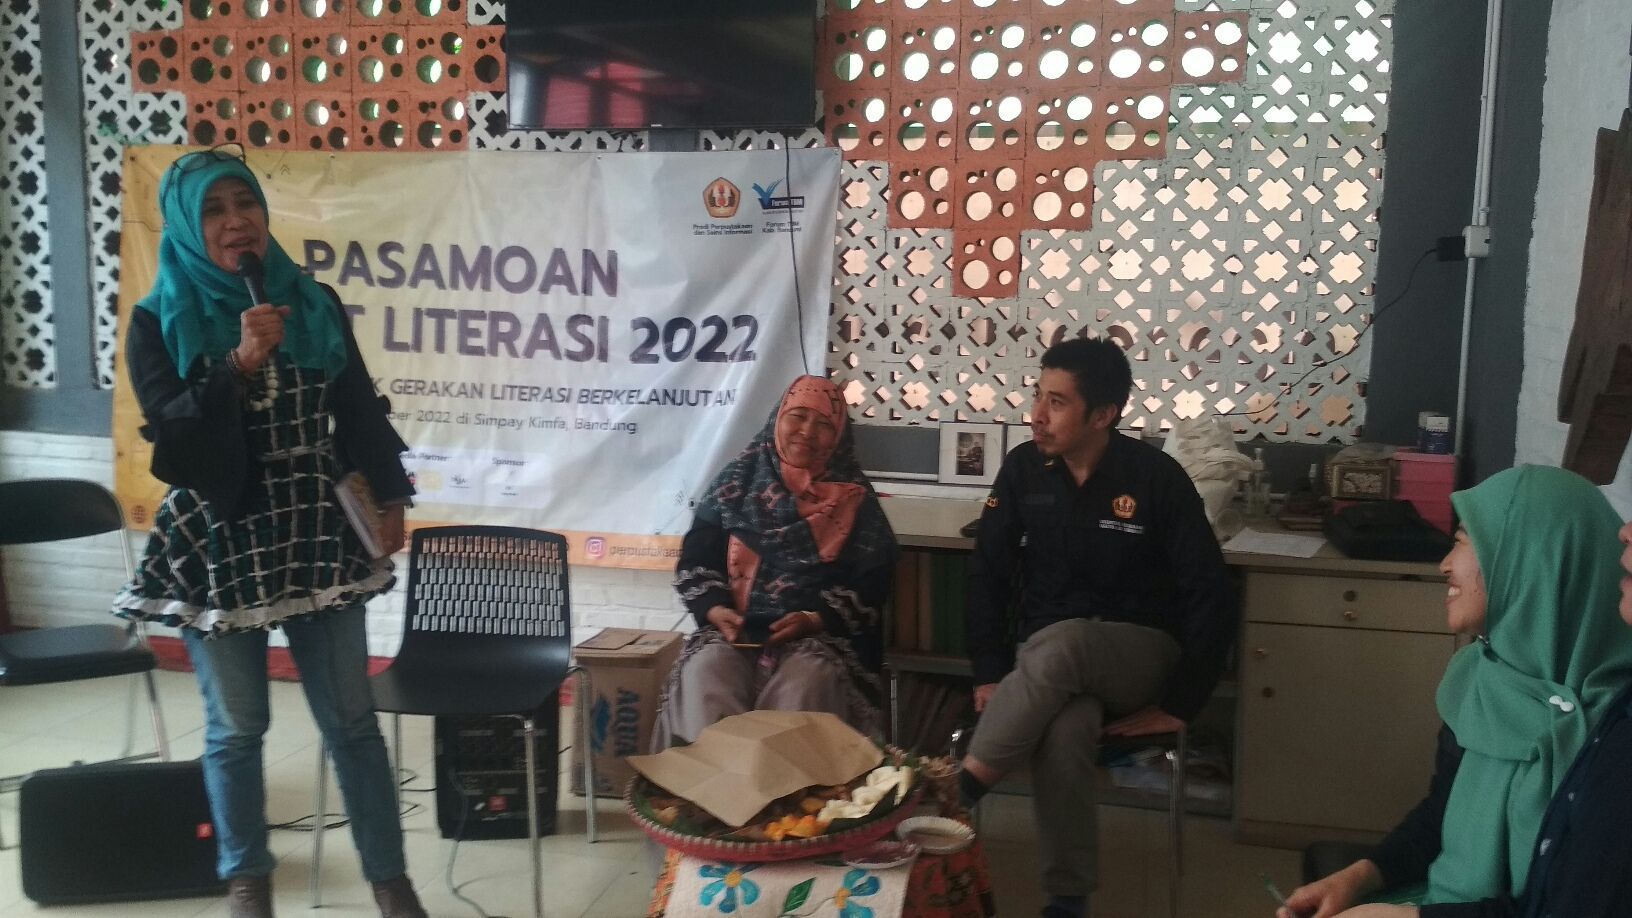 Suasana pertemuan penggiat literasi Kabupaten Bandung di Simpan Kimfa kabupaten Bandung 